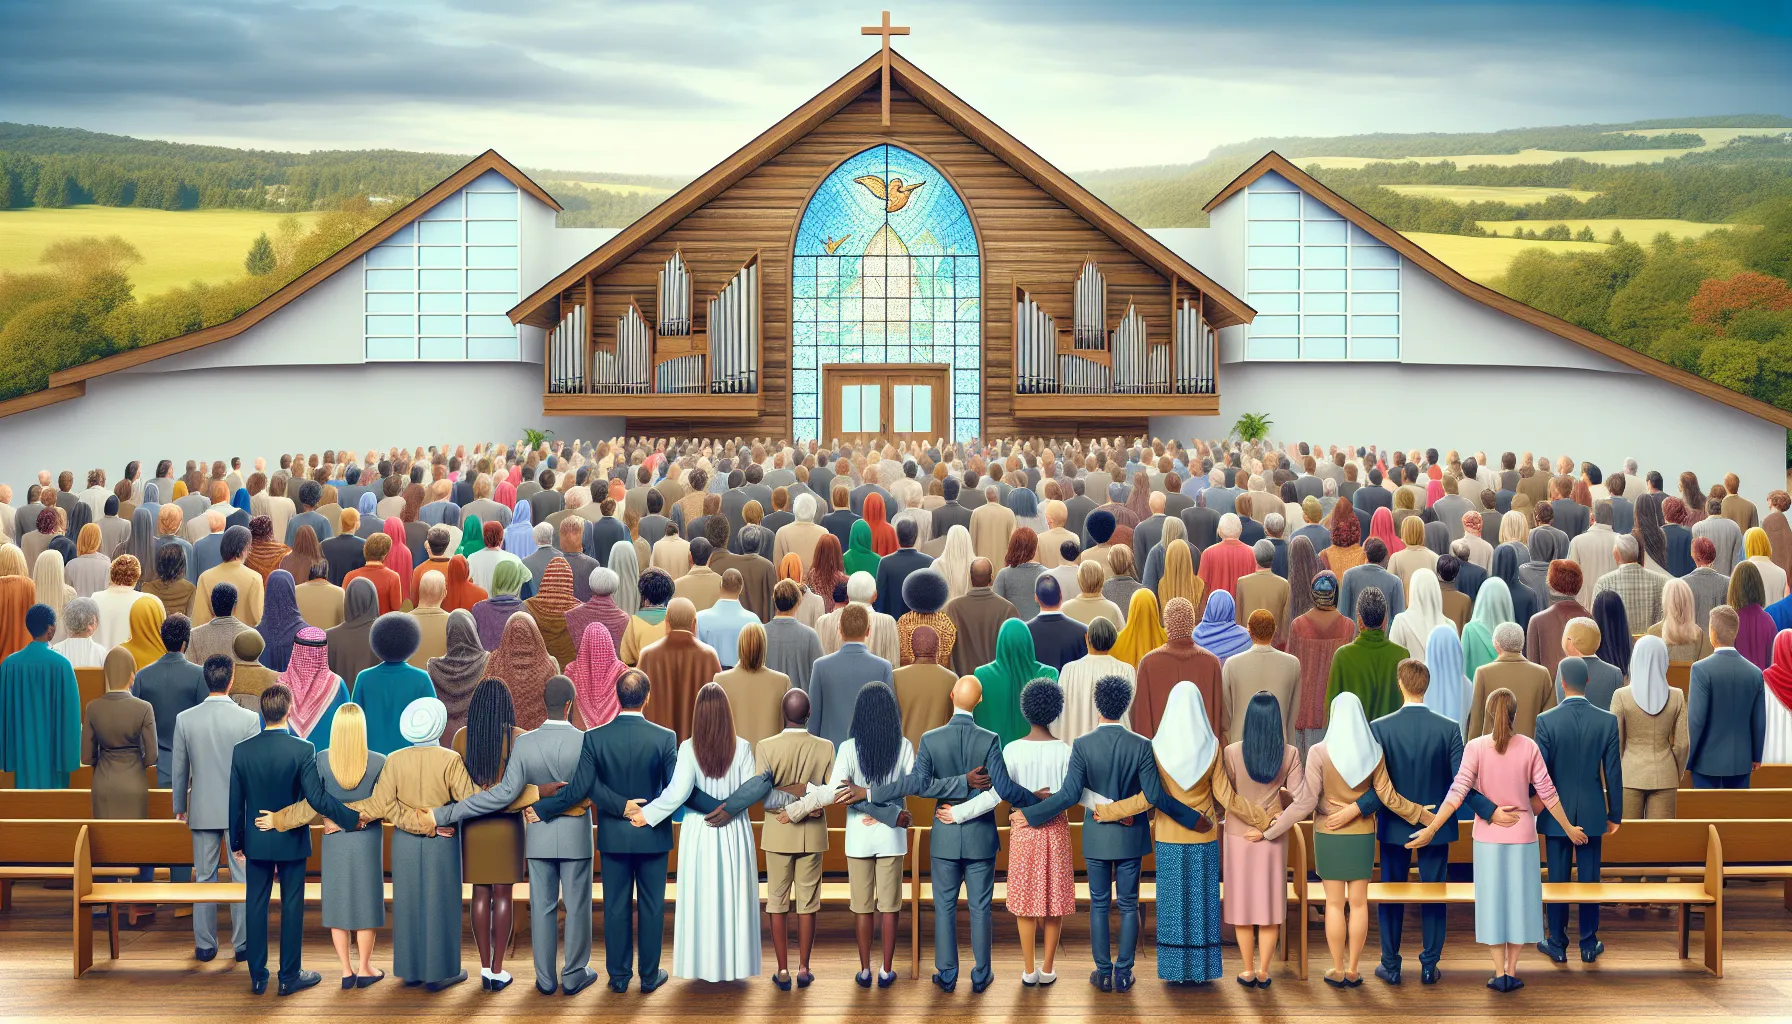 Imagen ilustrativa de una iglesia con personas unidas y armoniosas